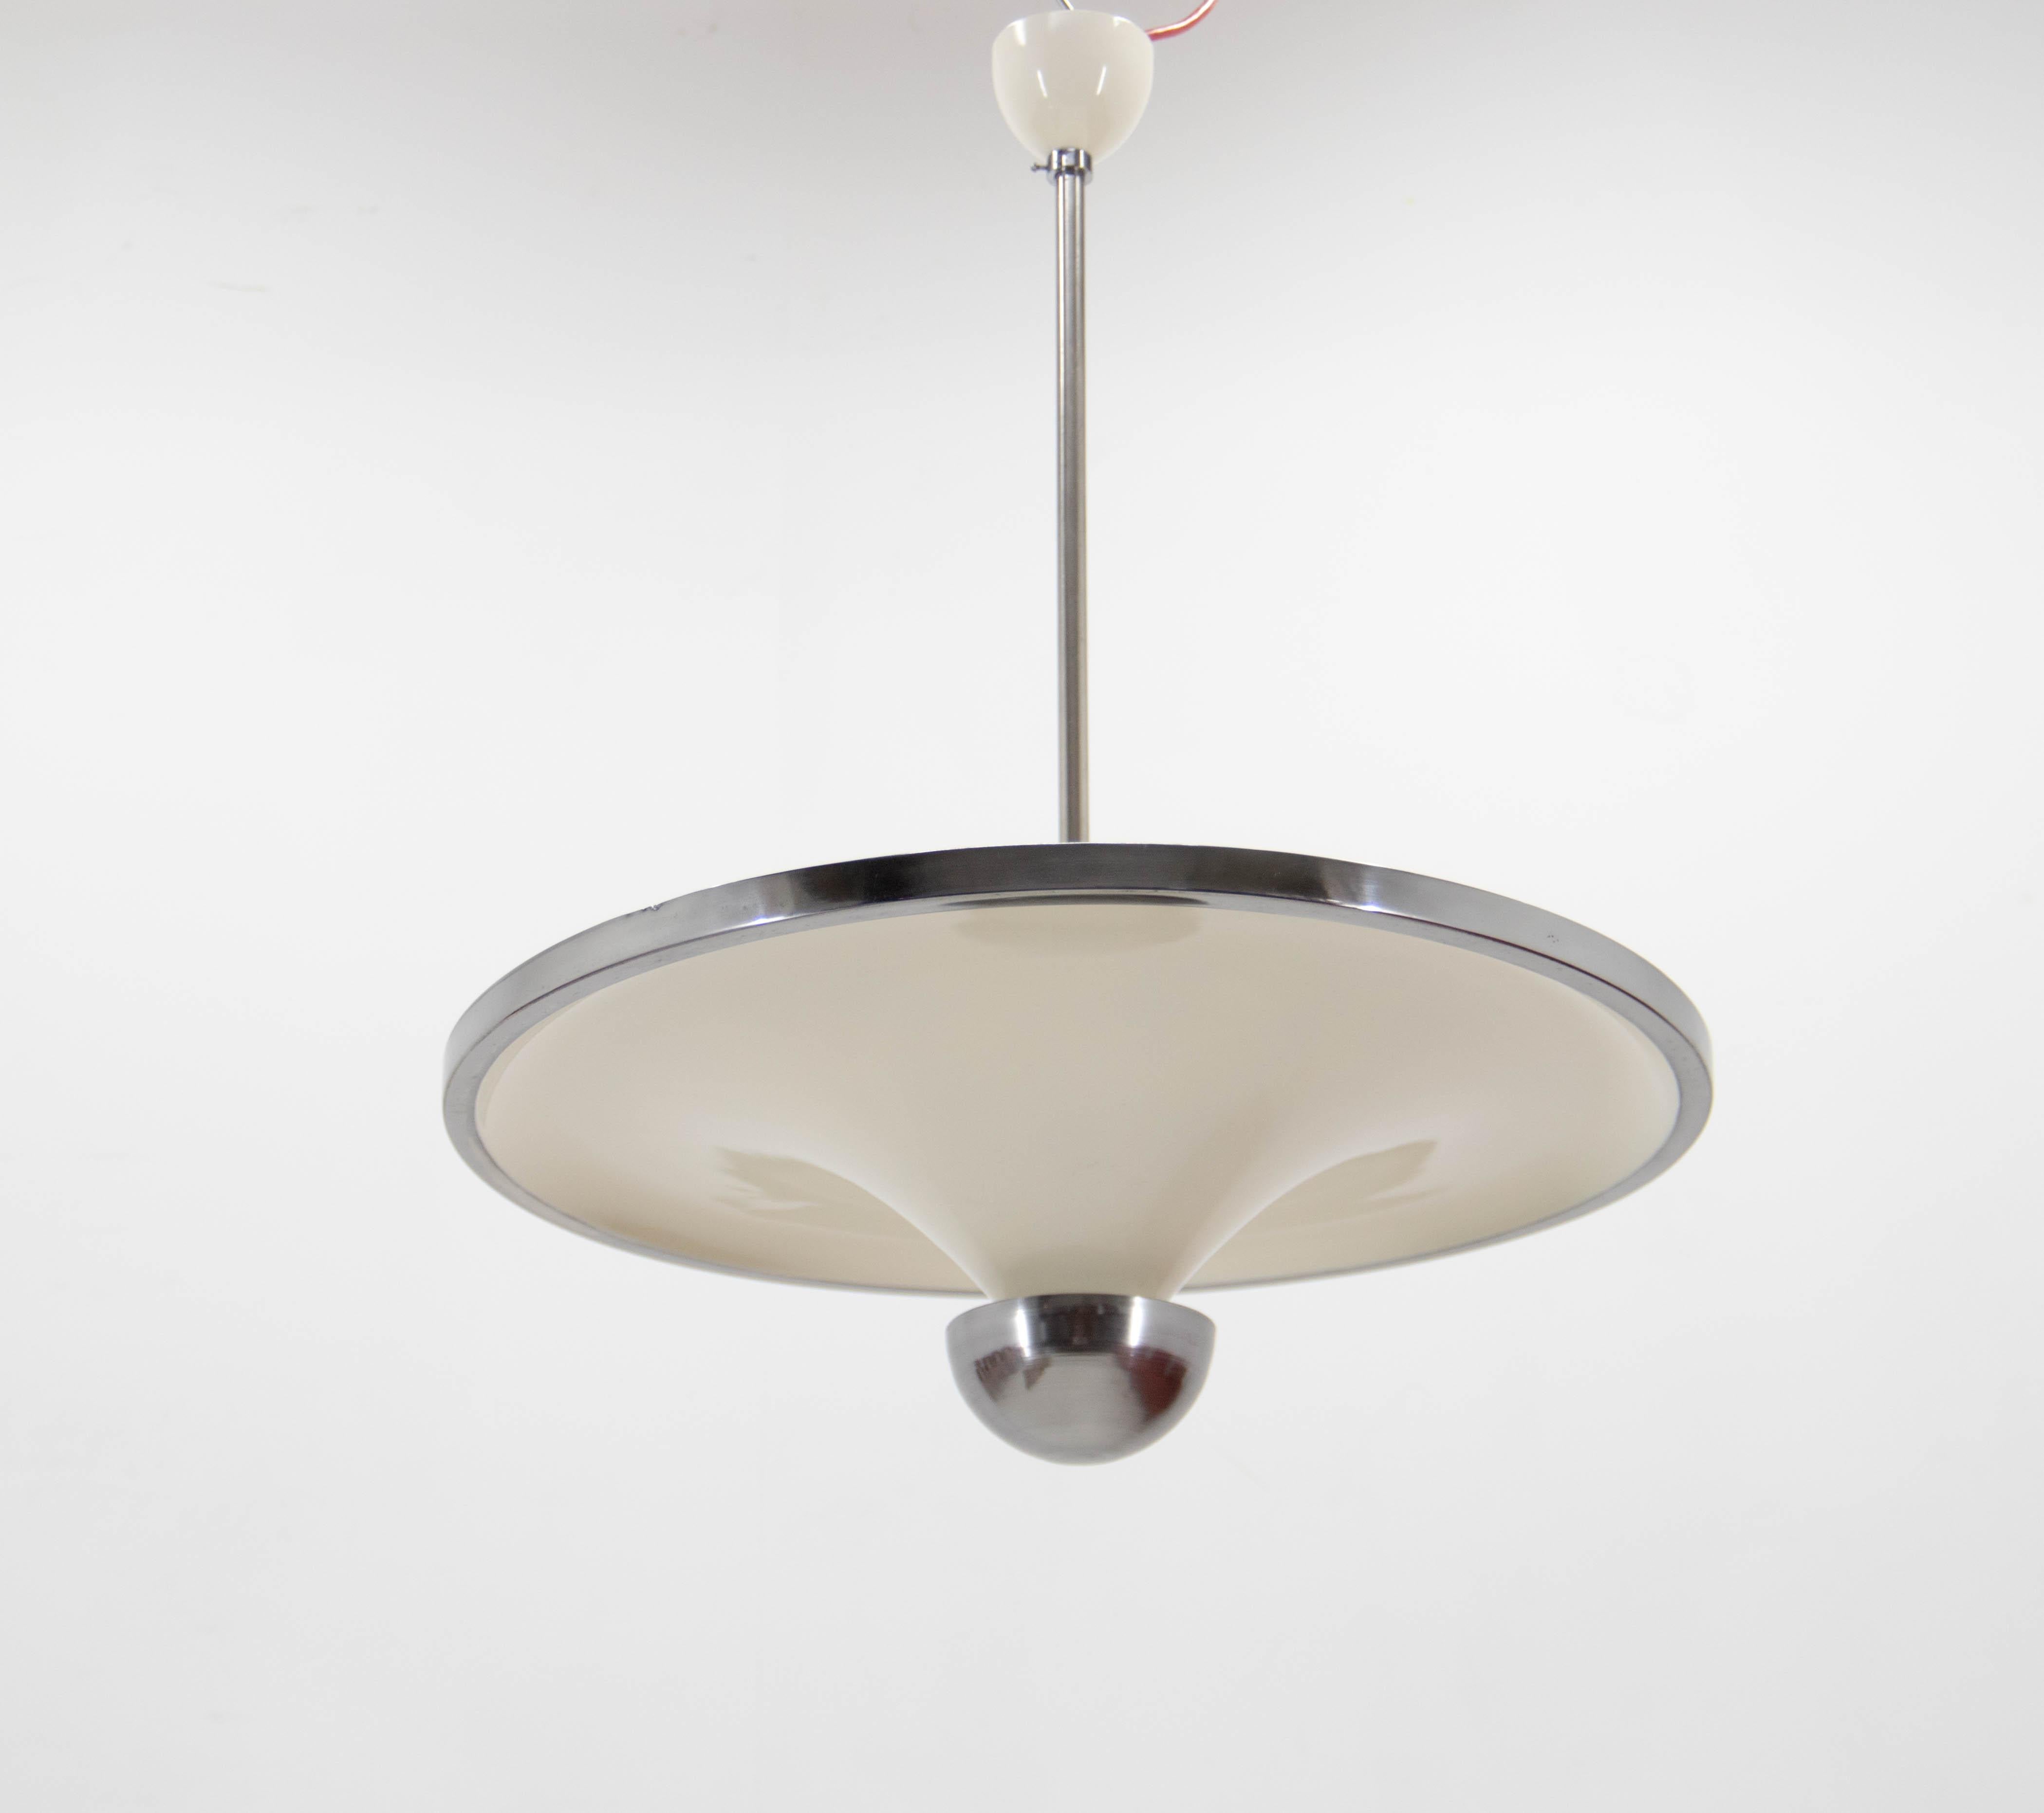 Magnifique lustre simple et élégant à lumière indirecte avec ampoule inférieure réglable, conçu par Franta Anyz et exécuté par IAS dans les années 1920. 
Restauré avec soin : 
nouvelle peinture de couleur ivoire
recâblage : deux circuits séparés -